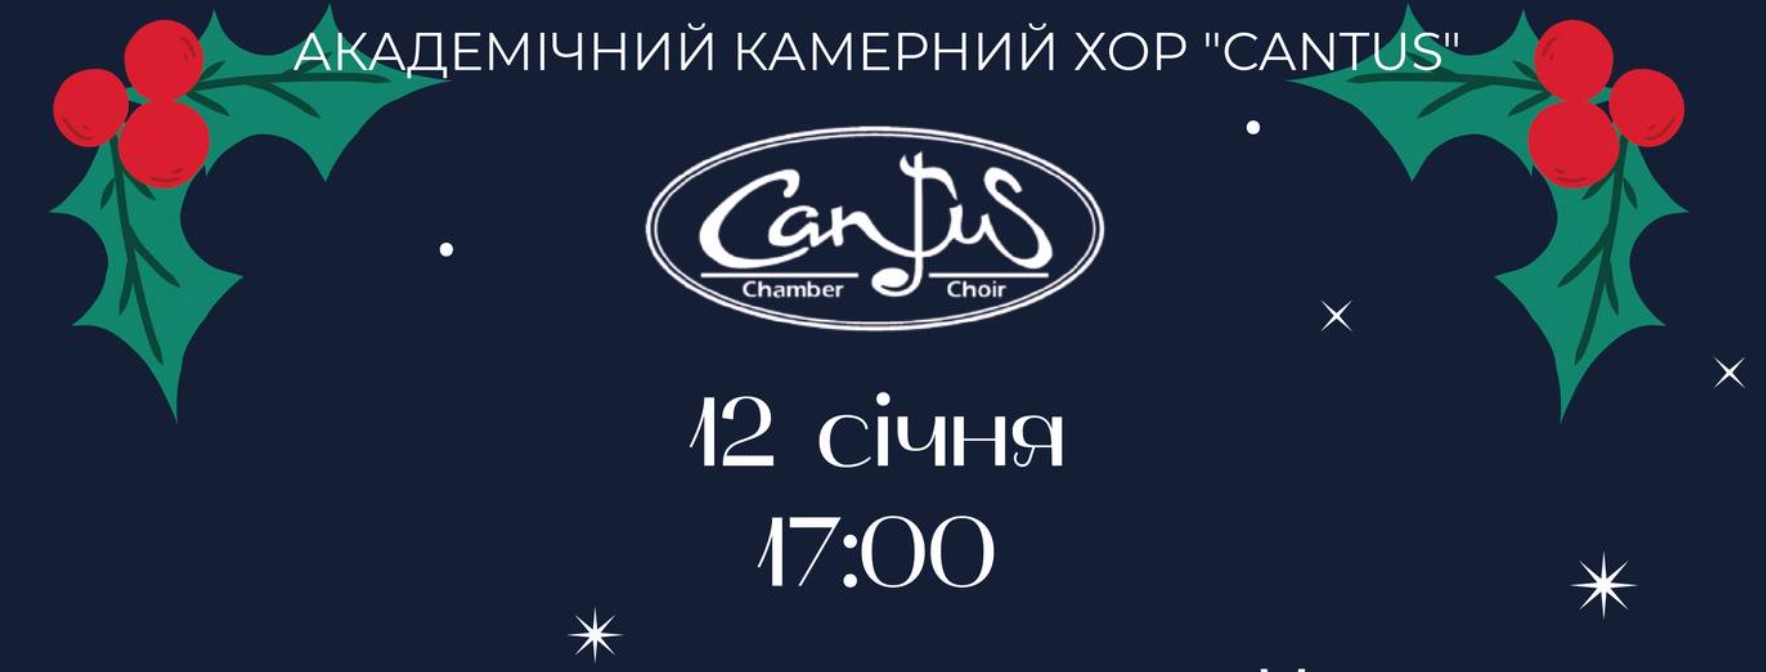 Різдвяний концерт камерного хору “Cantus” для дітей та батьків